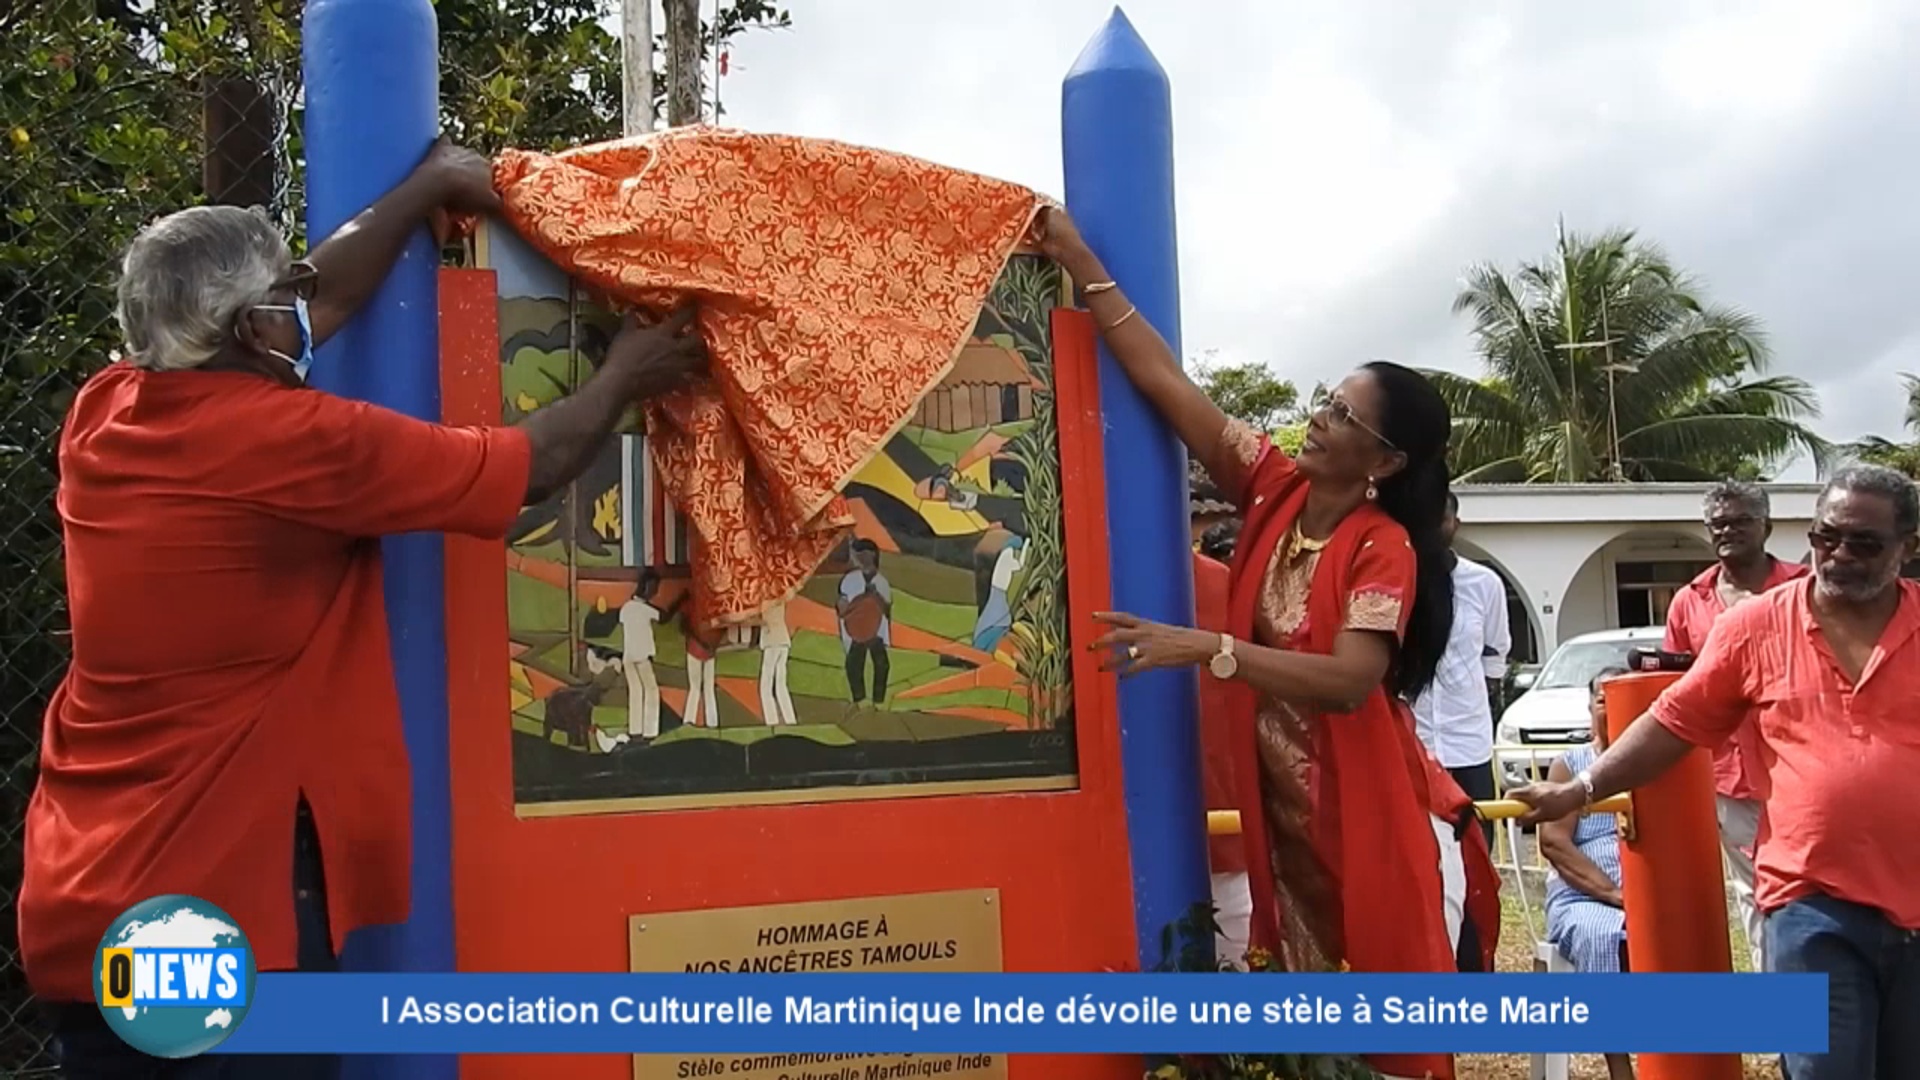 [Vidéo] Onews. L Association Martinique Inde dévoile une stèle à Sainte Marie